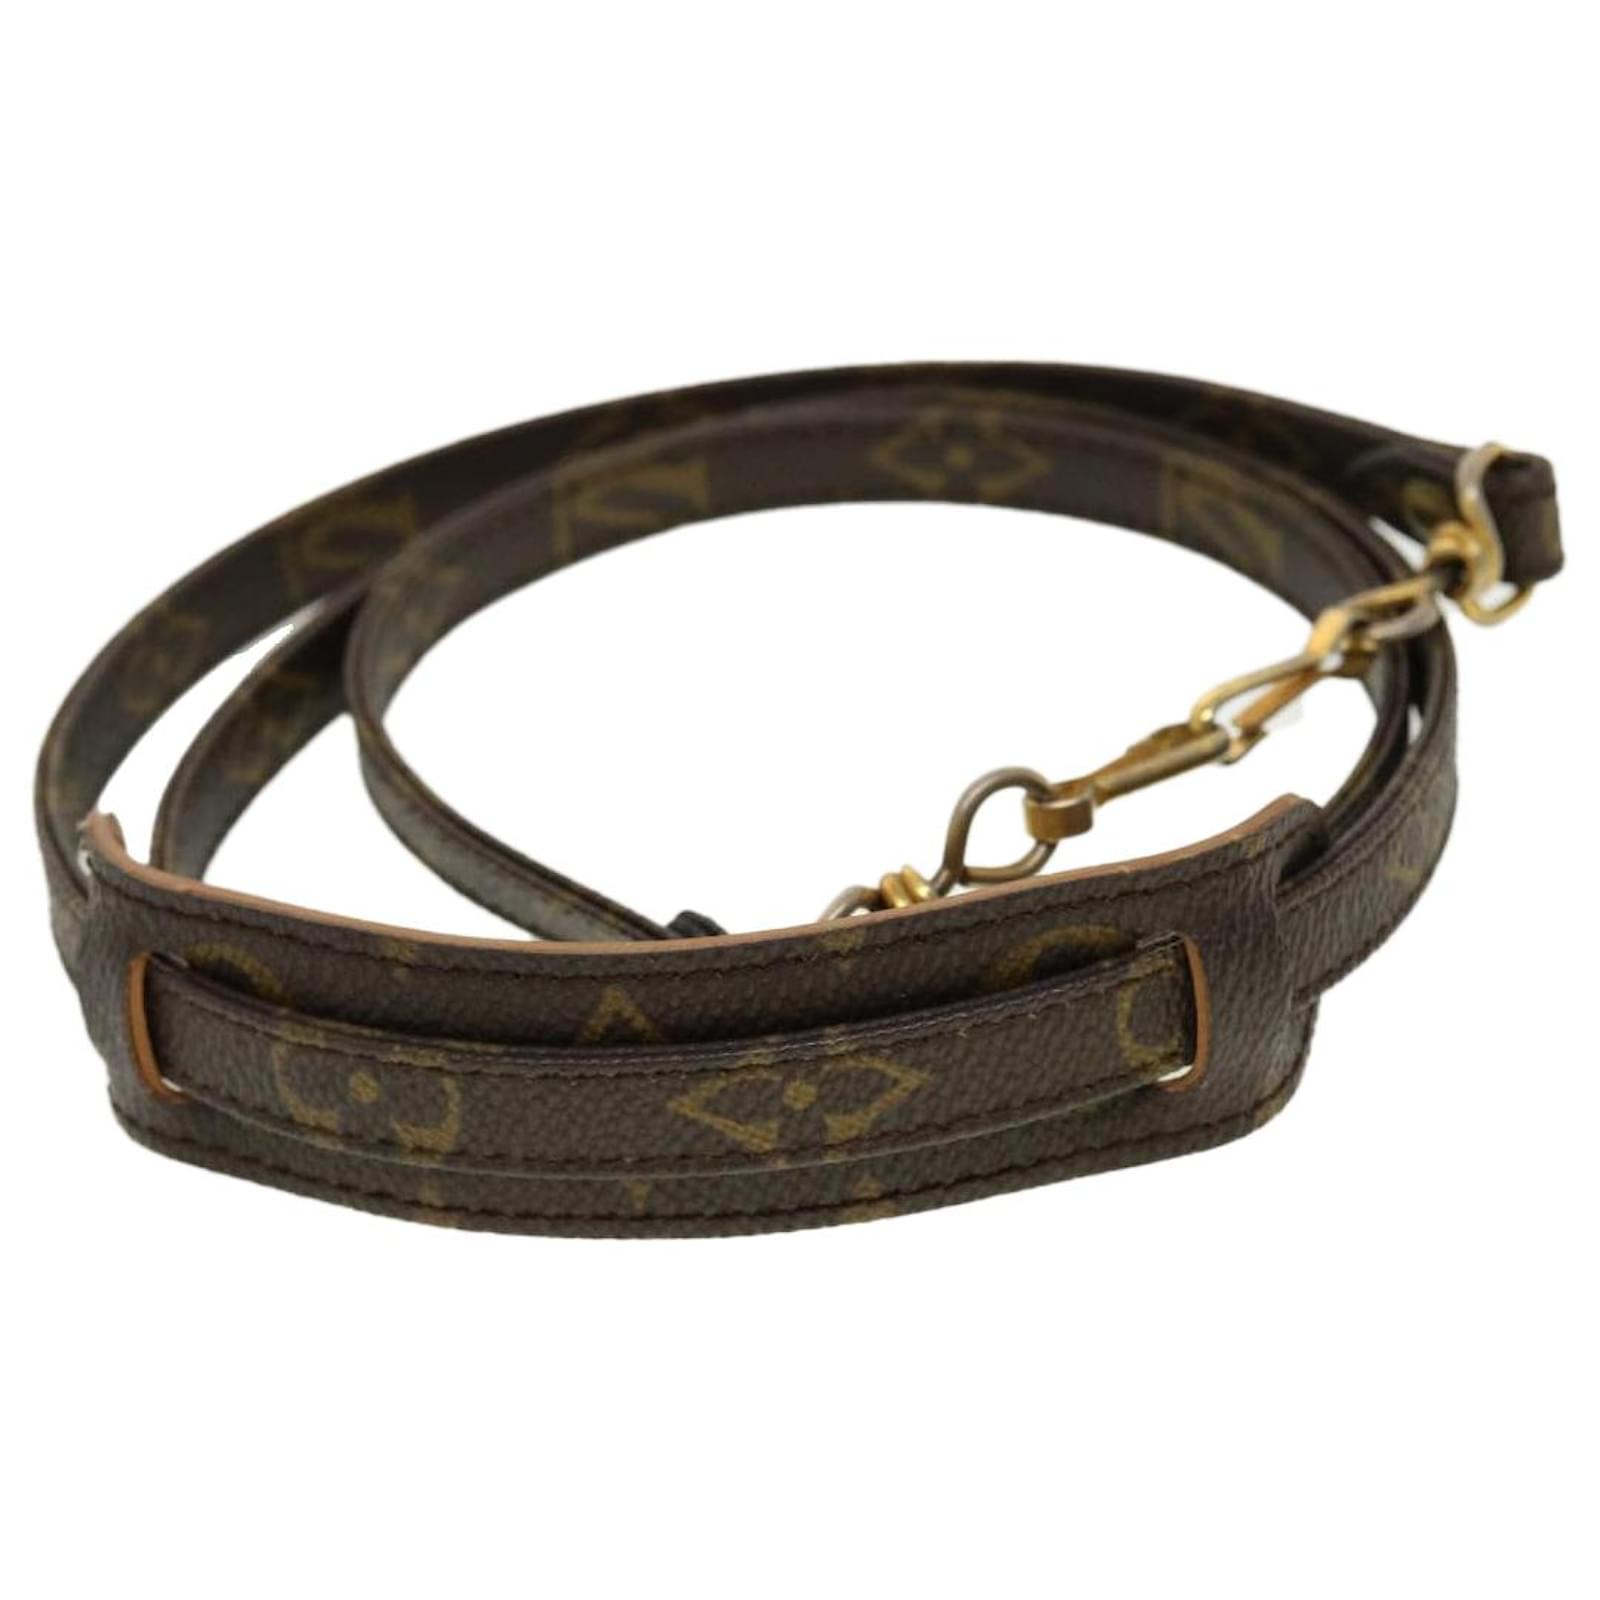 Louis Vuitton Vintage 2007 Belt